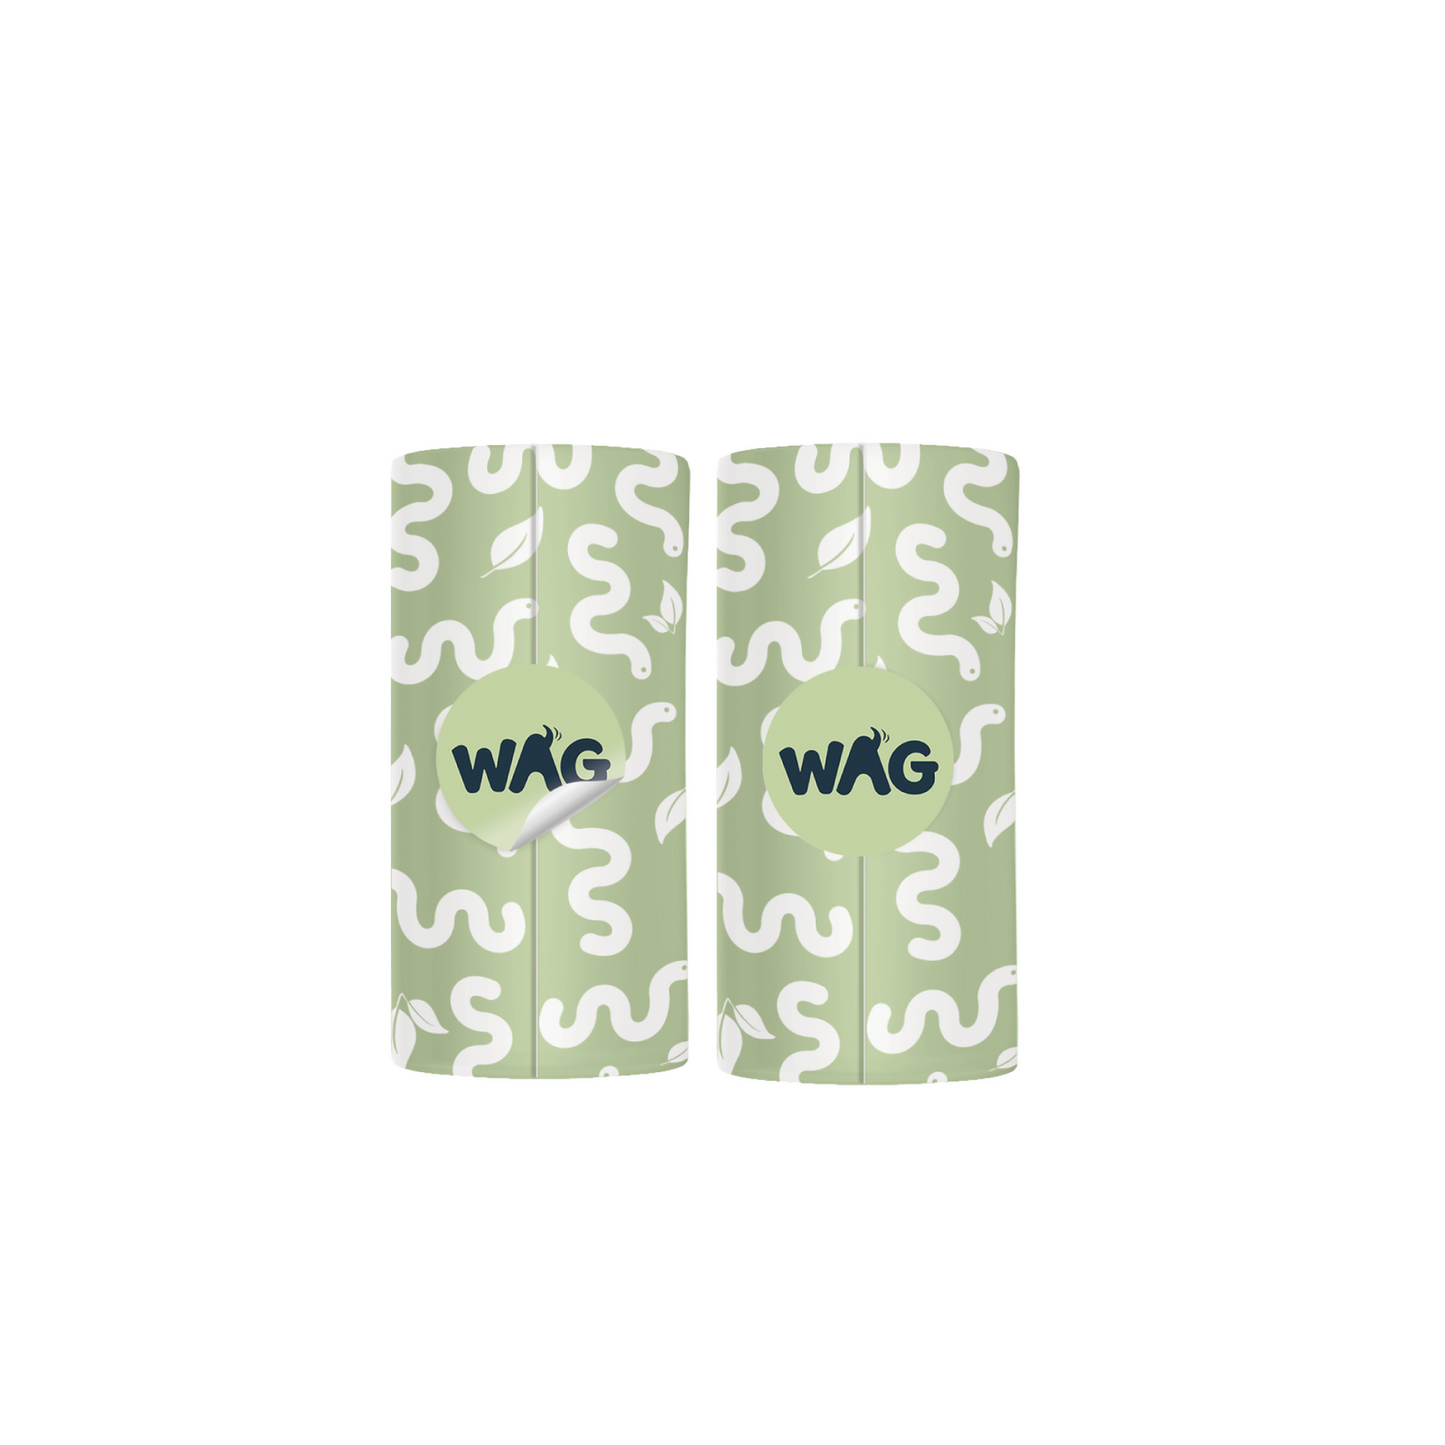 WAG Bamboo Bag Dispenser Pod 1 Dispenser Pod for